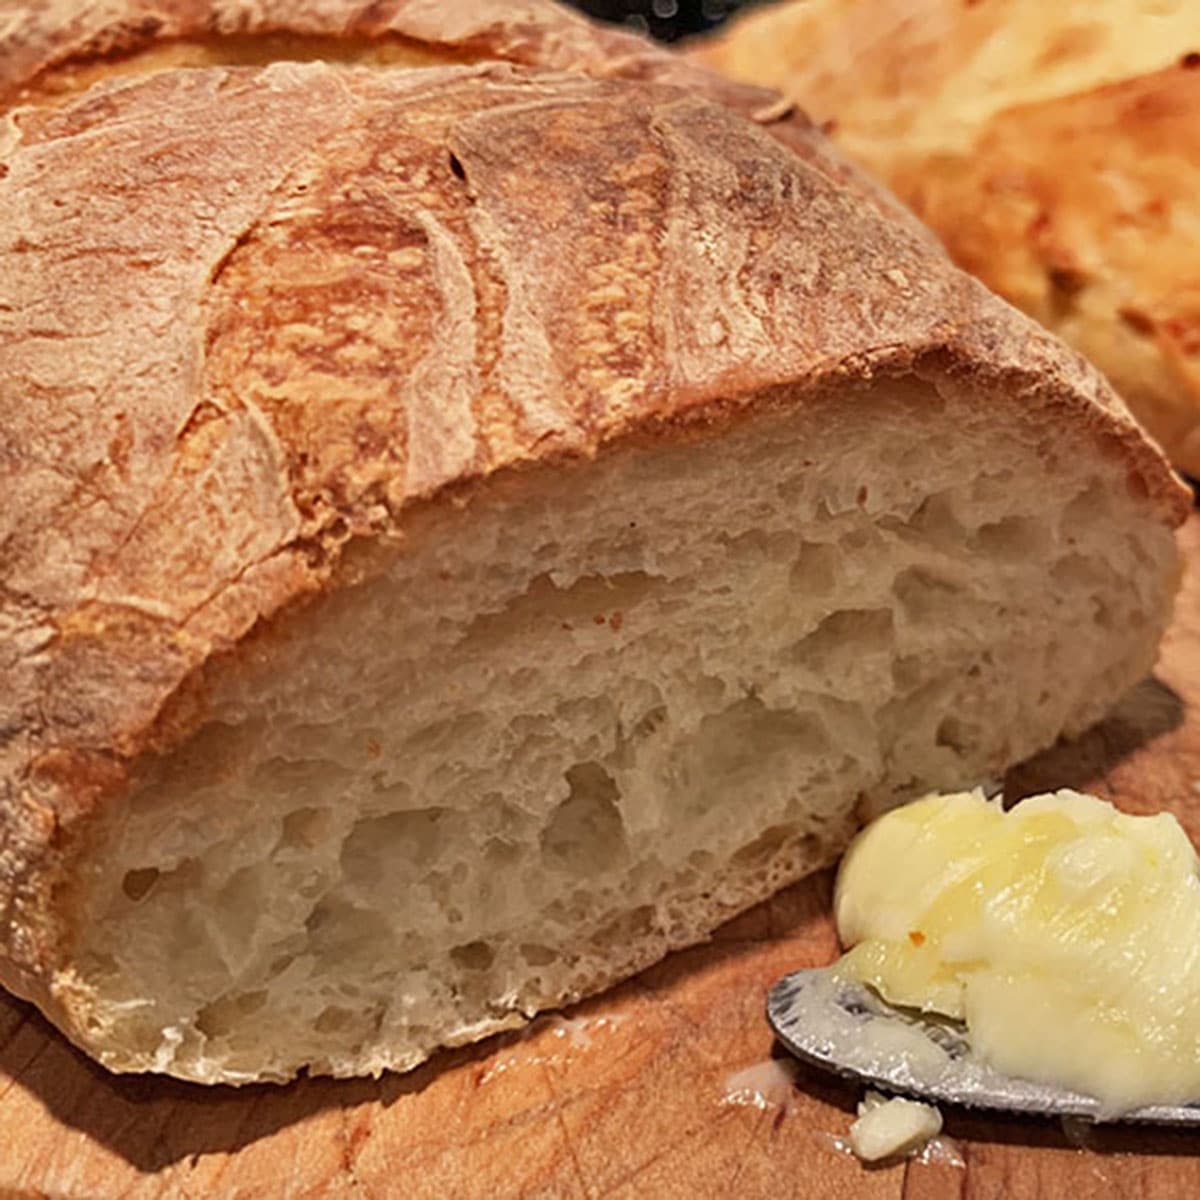 https://www.plattertalk.com/wp-content/uploads/2019/09/Bread-and-Butter-sq.jpg